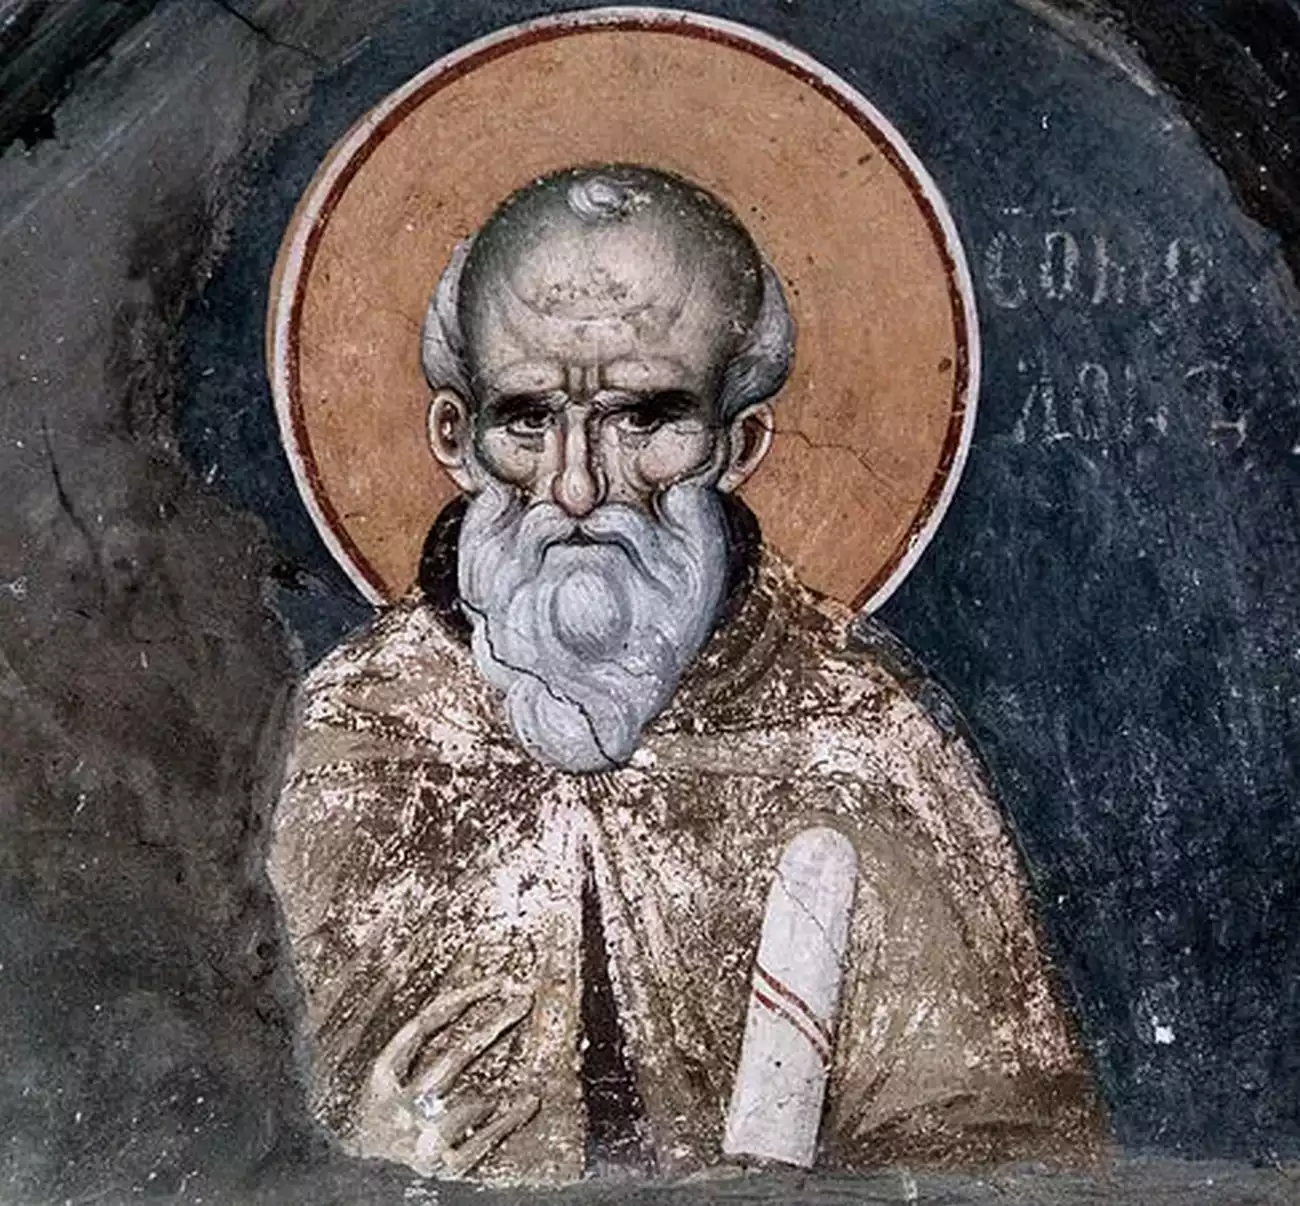 Ο Άγιος Μάξιμος ο Ομολογητής εικονίζεται σε εξαιρετικής τέχνης τοιχογραφία στο Πρωτάτο του Αγίου Όρους Άθω.